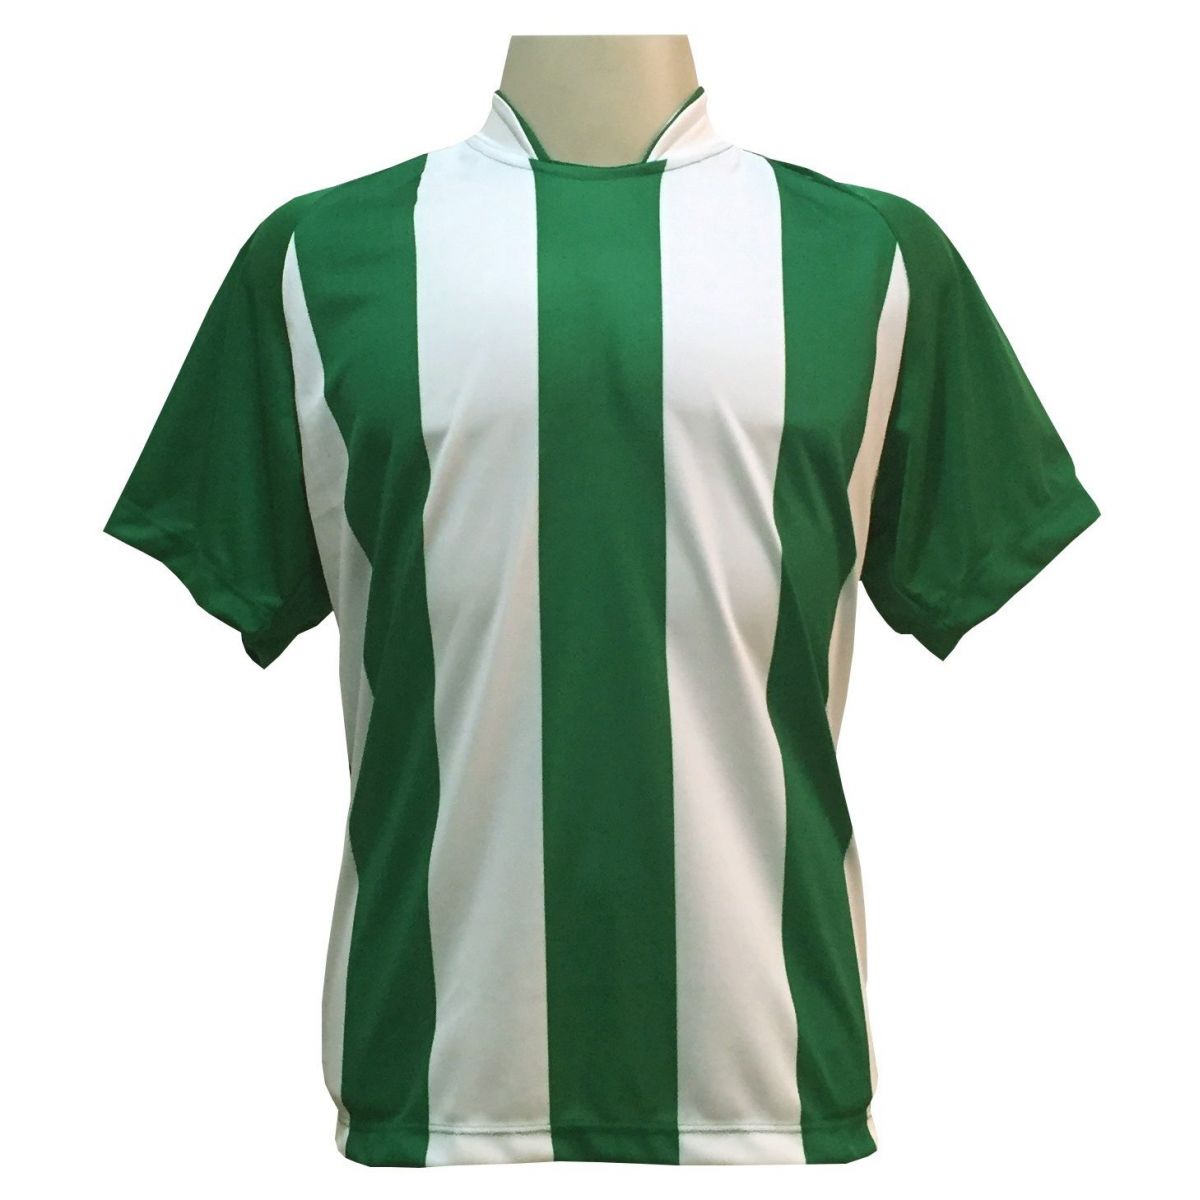 Jogo de Camisa com 12 unidades modelo Milan Verde/Branco + 1 Goleiro + Brindes